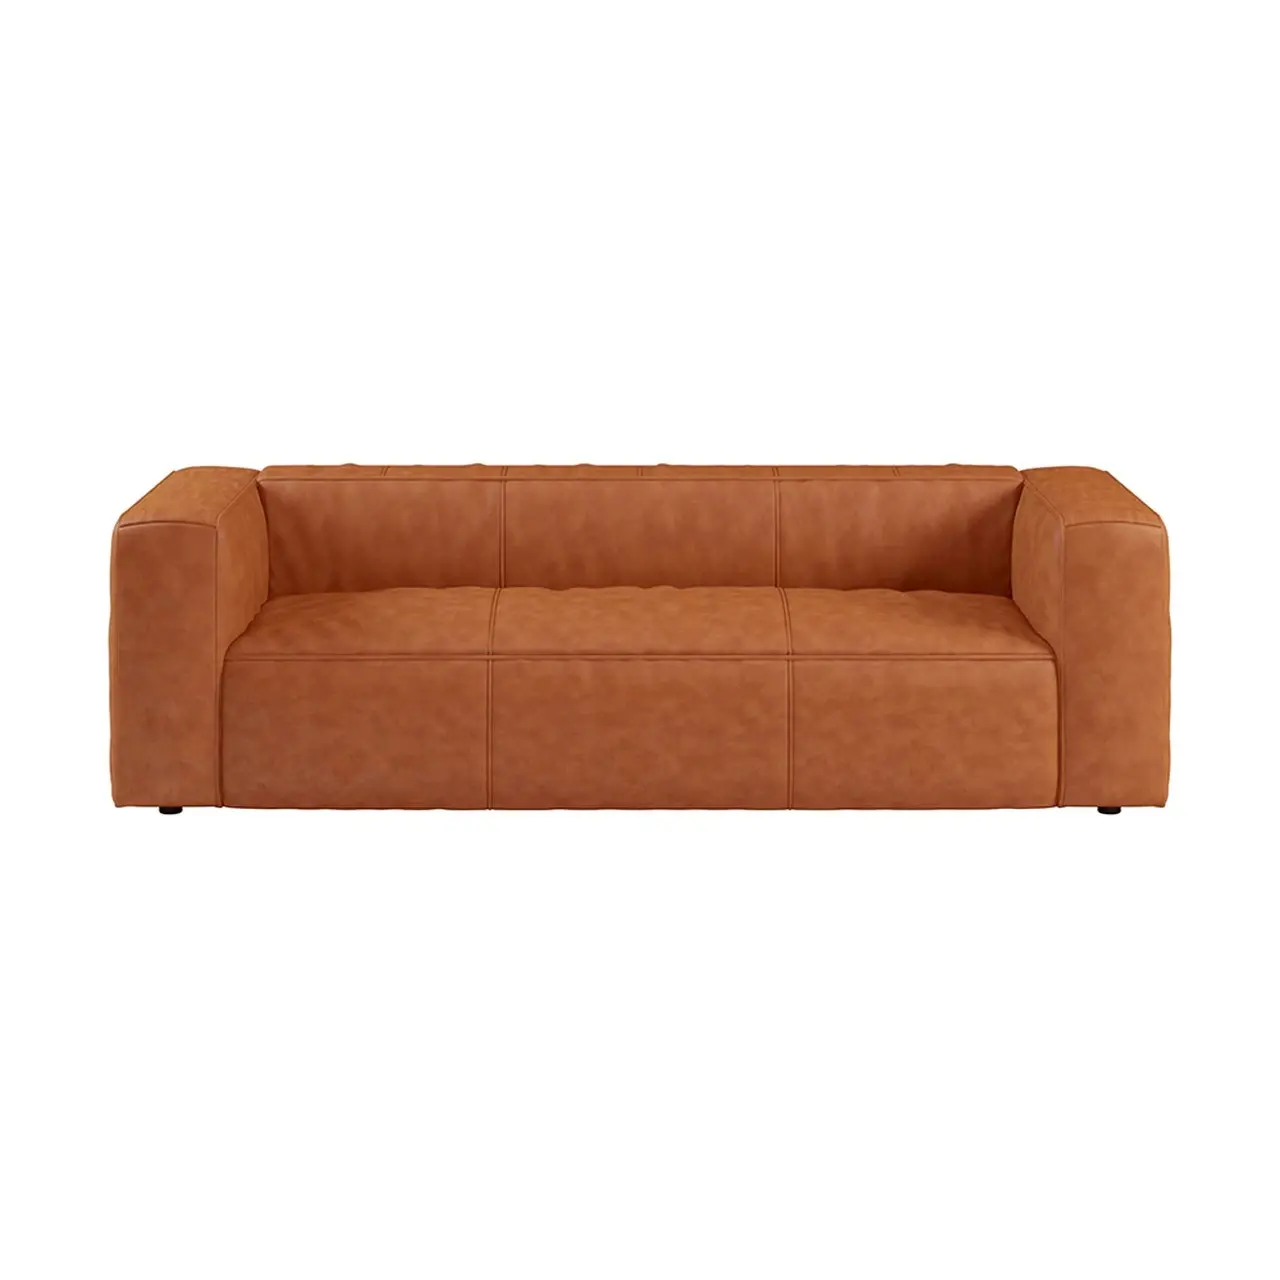 Divano divano reclinabile in pelle prezzo competitivo moderno designer divano in pelle rustica divani